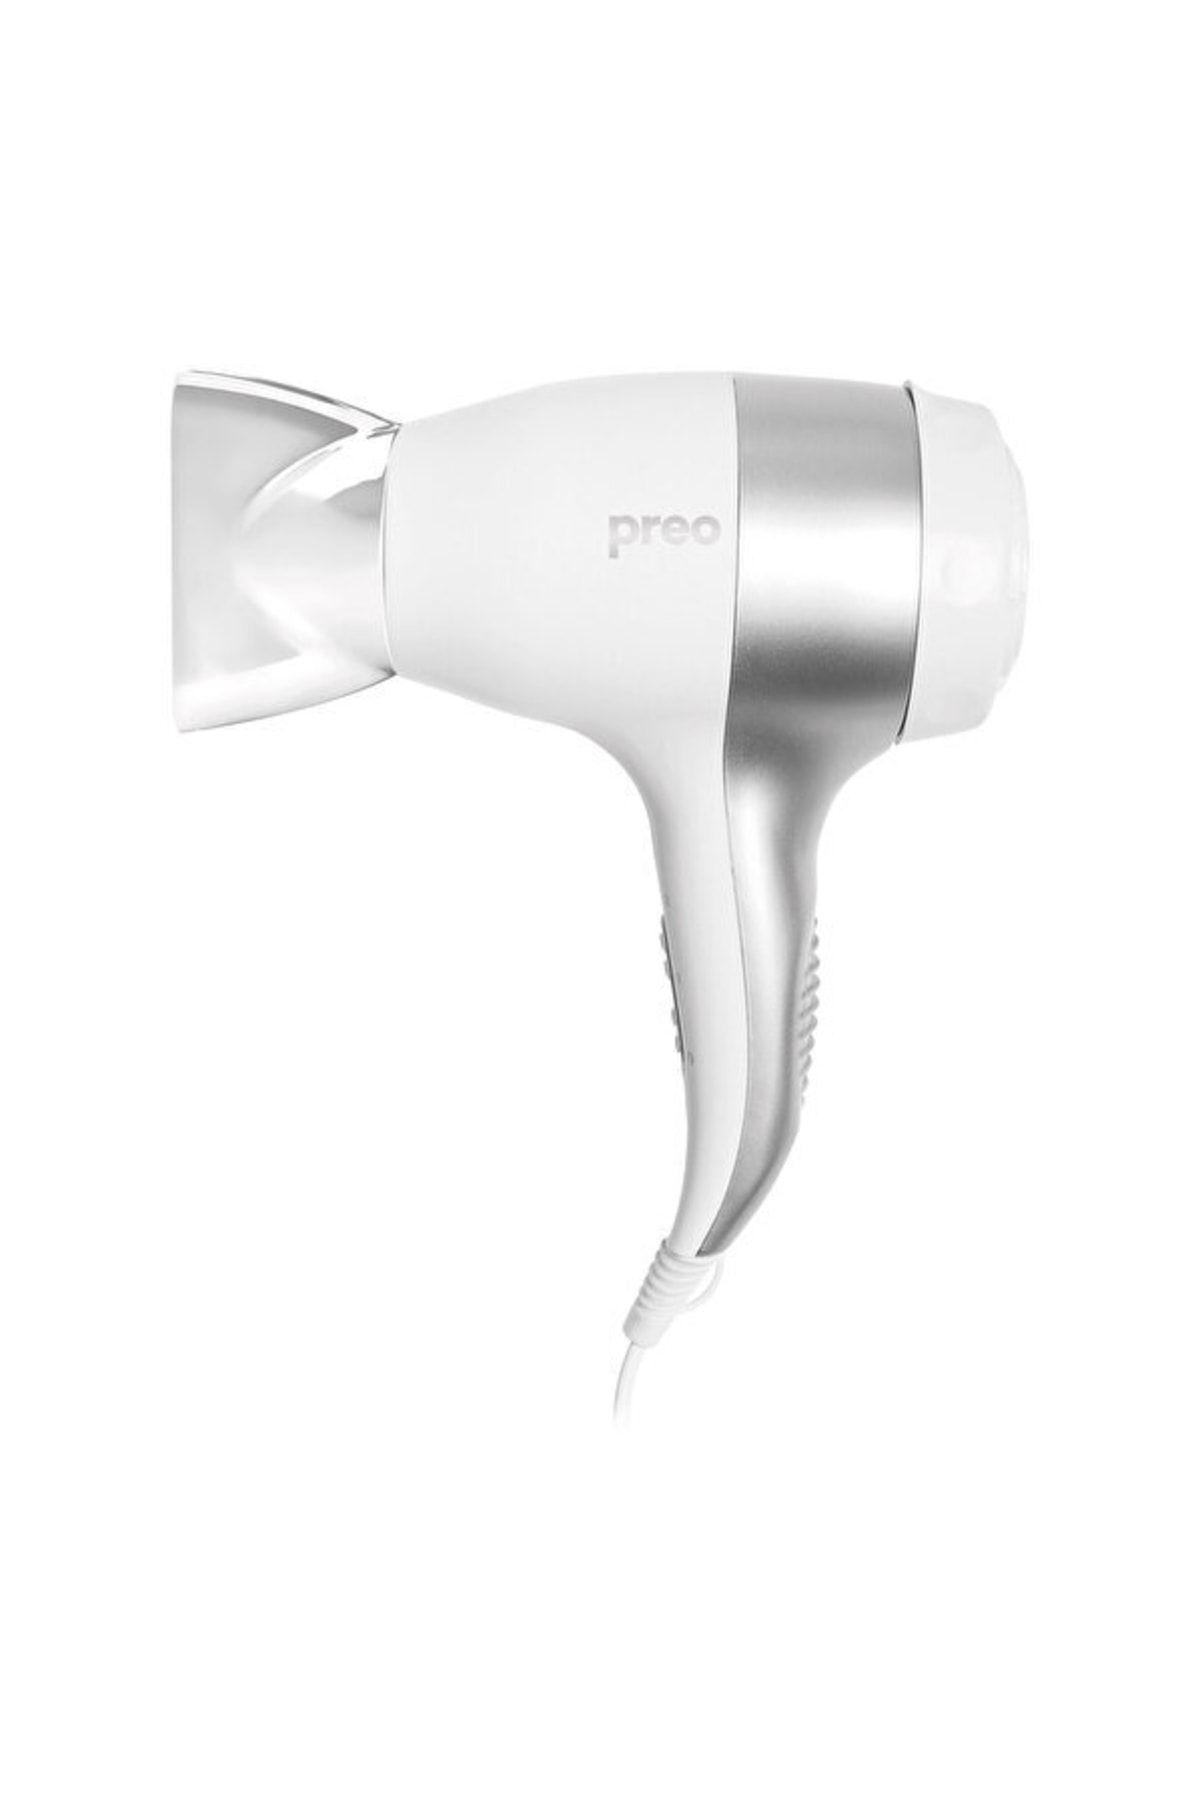 Preo Phd08 1000w Beyaz Saç Kurutma Makinesi